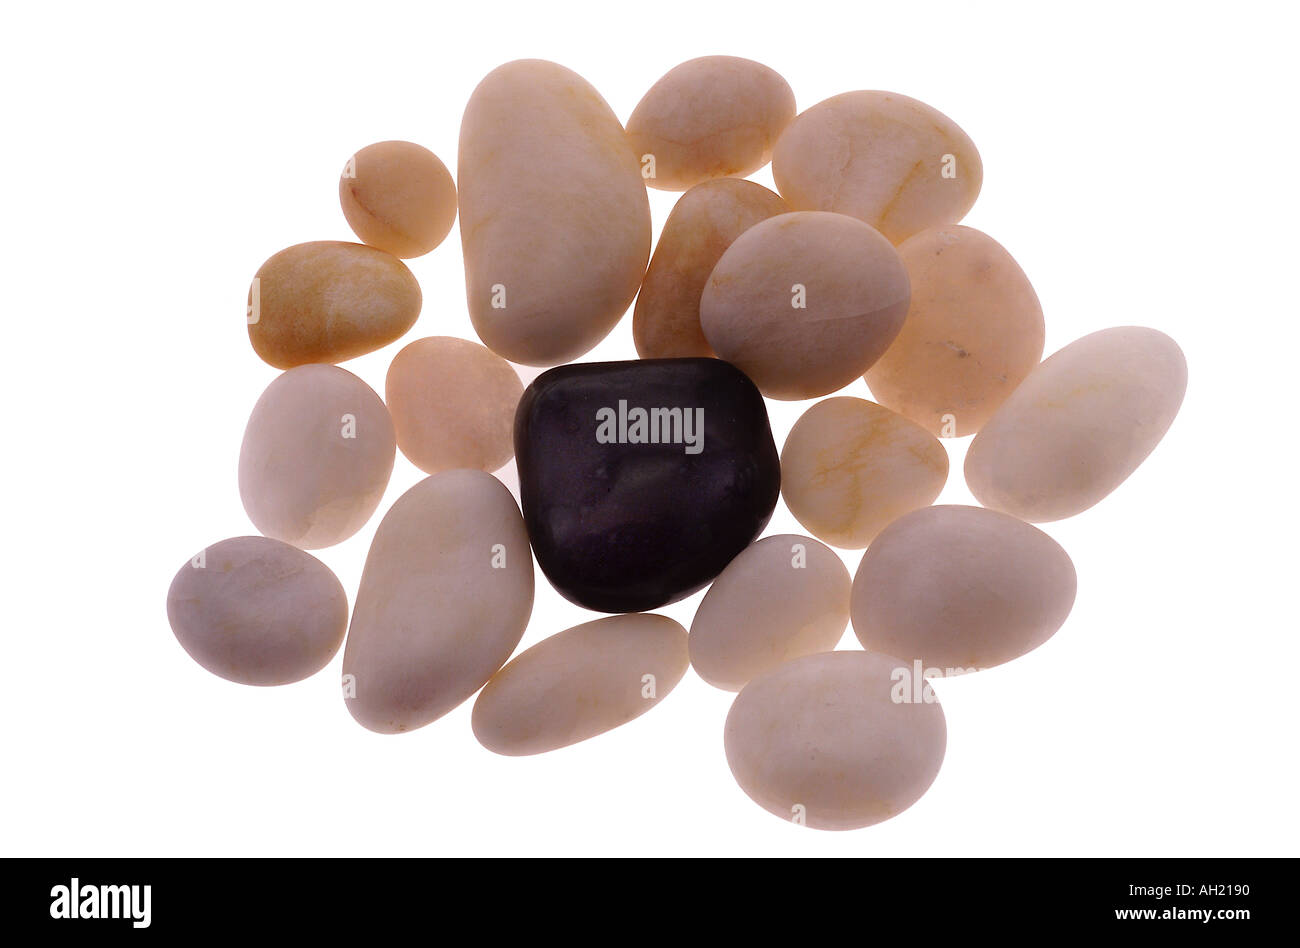 Smooth white beach stones surrounding one black stone, silhouette on white background Stock Photo